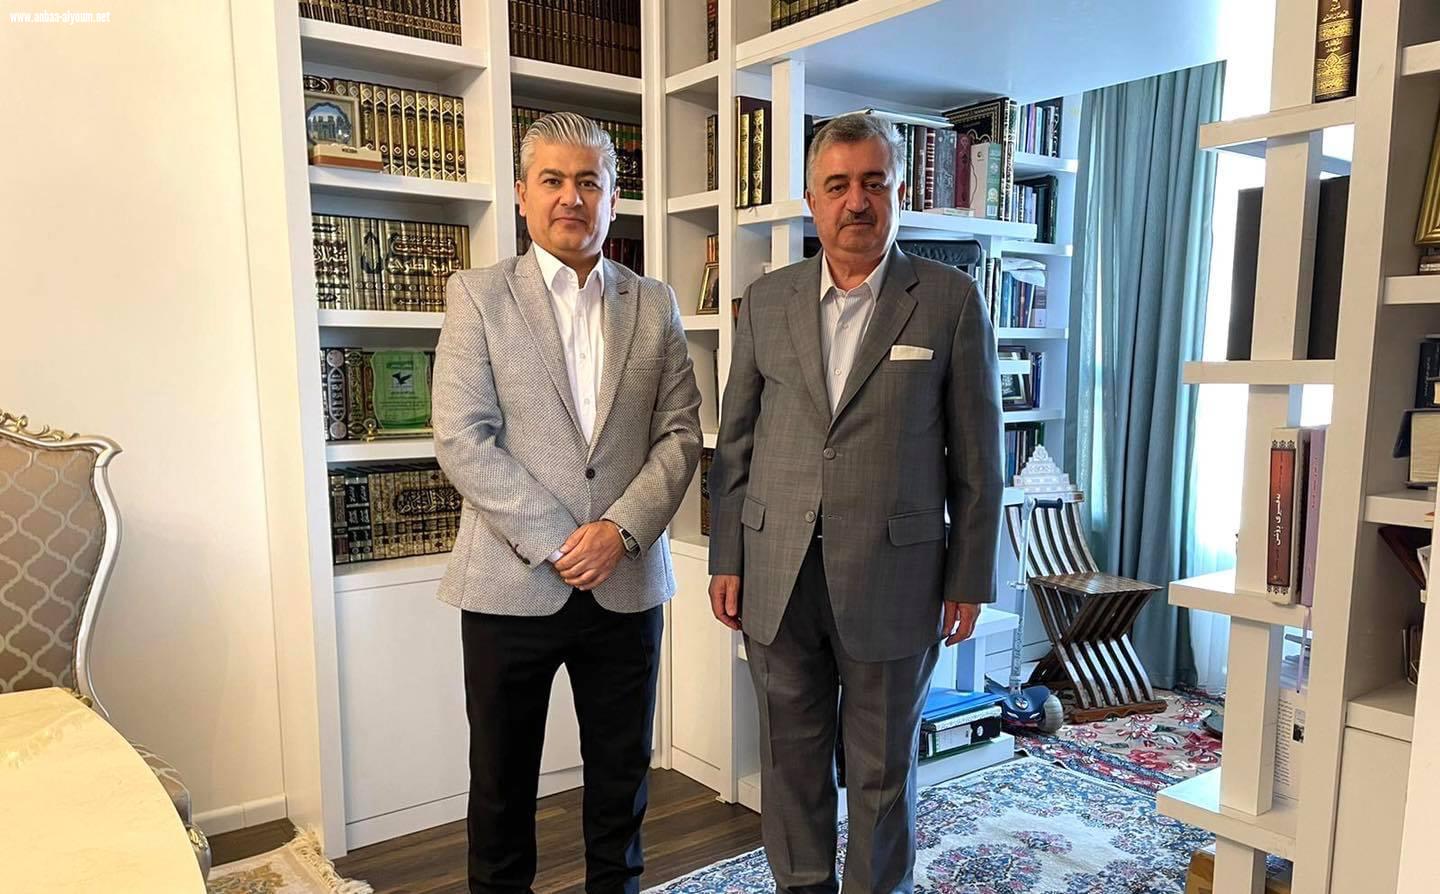 السفير عمر البرزنجي يستقبل الصحفي السيد هاوكار قادر في منزله في السليمانية